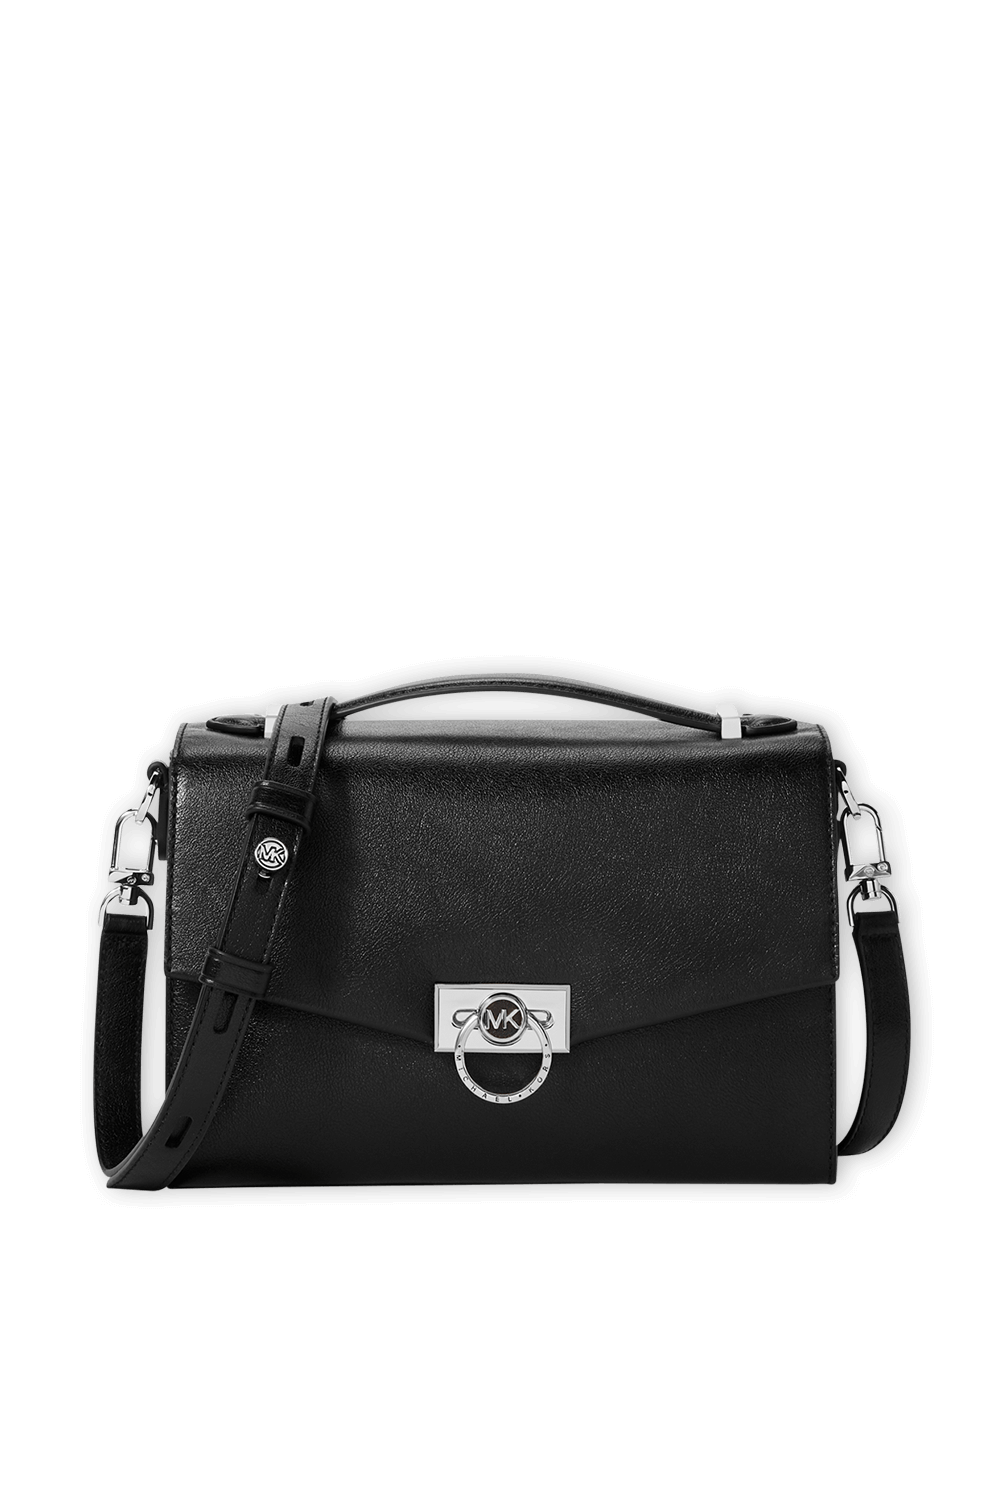 MD Messenger Bag in Black Leather MICHAEL KORS